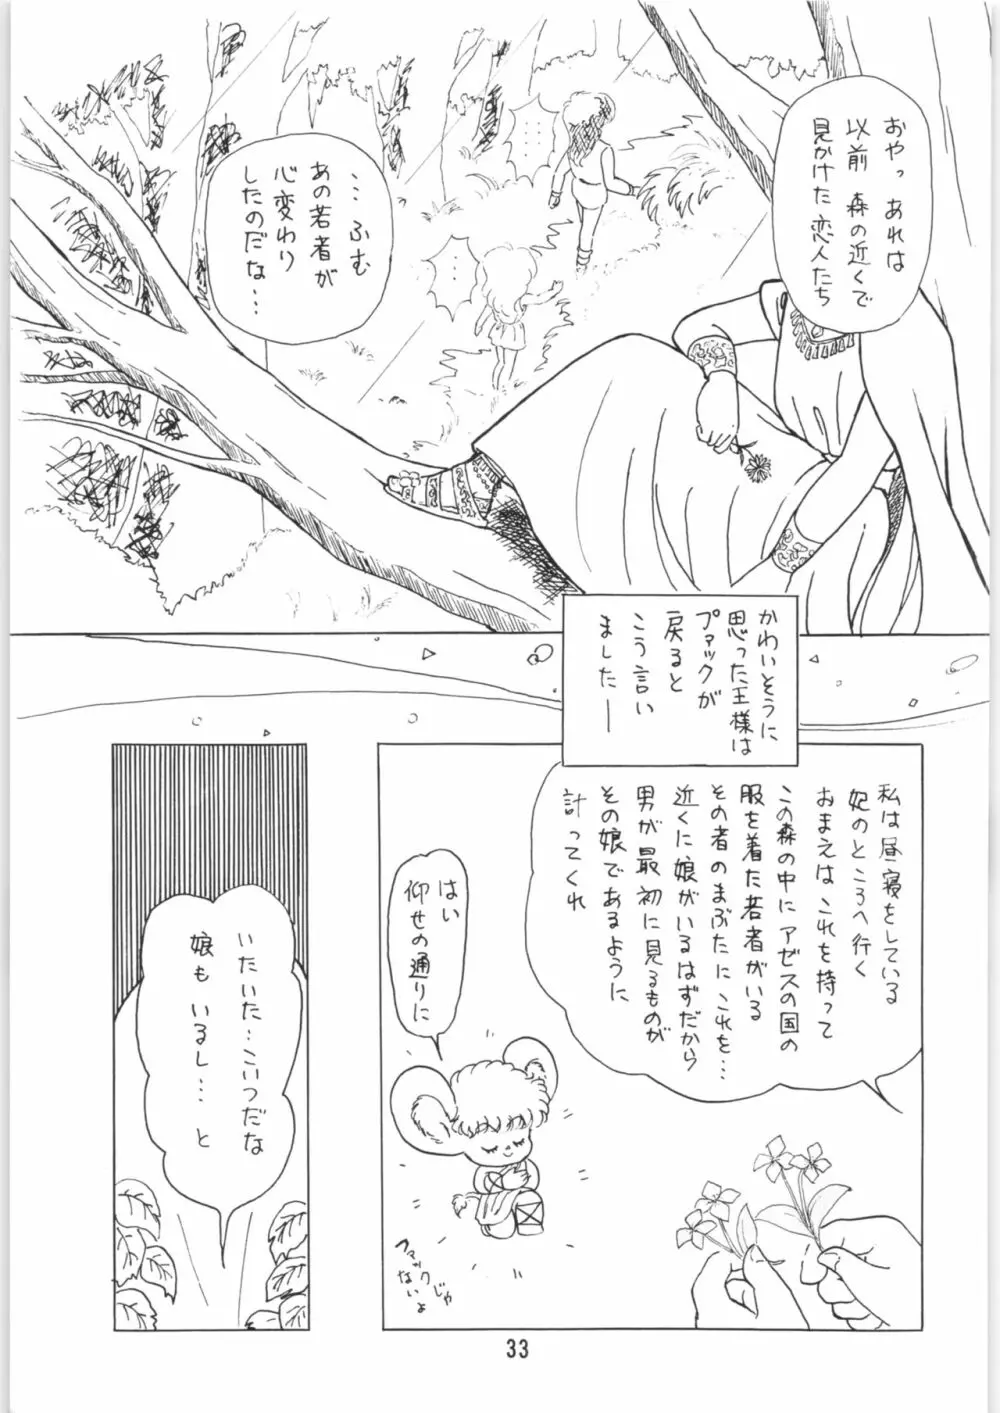 ちゅっぱ・ちゃぷす vol.6 - page34